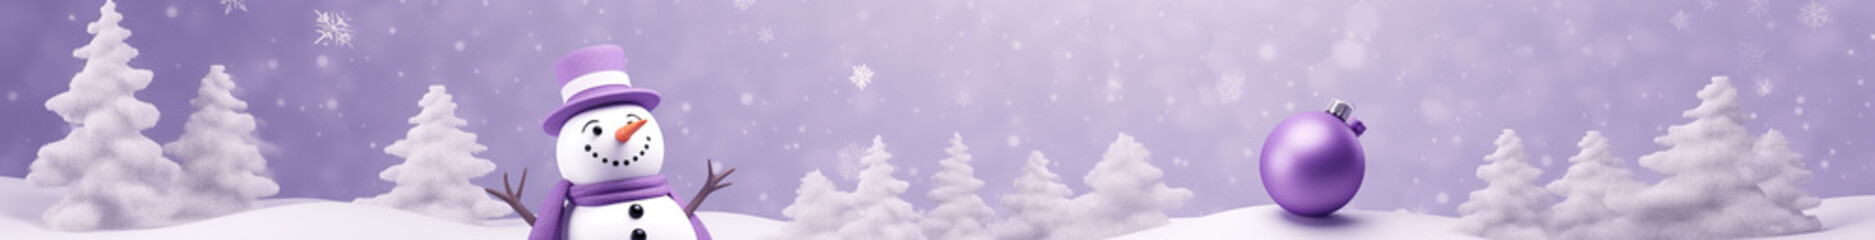 イメージカラー紫の雪だるまの背景用素材